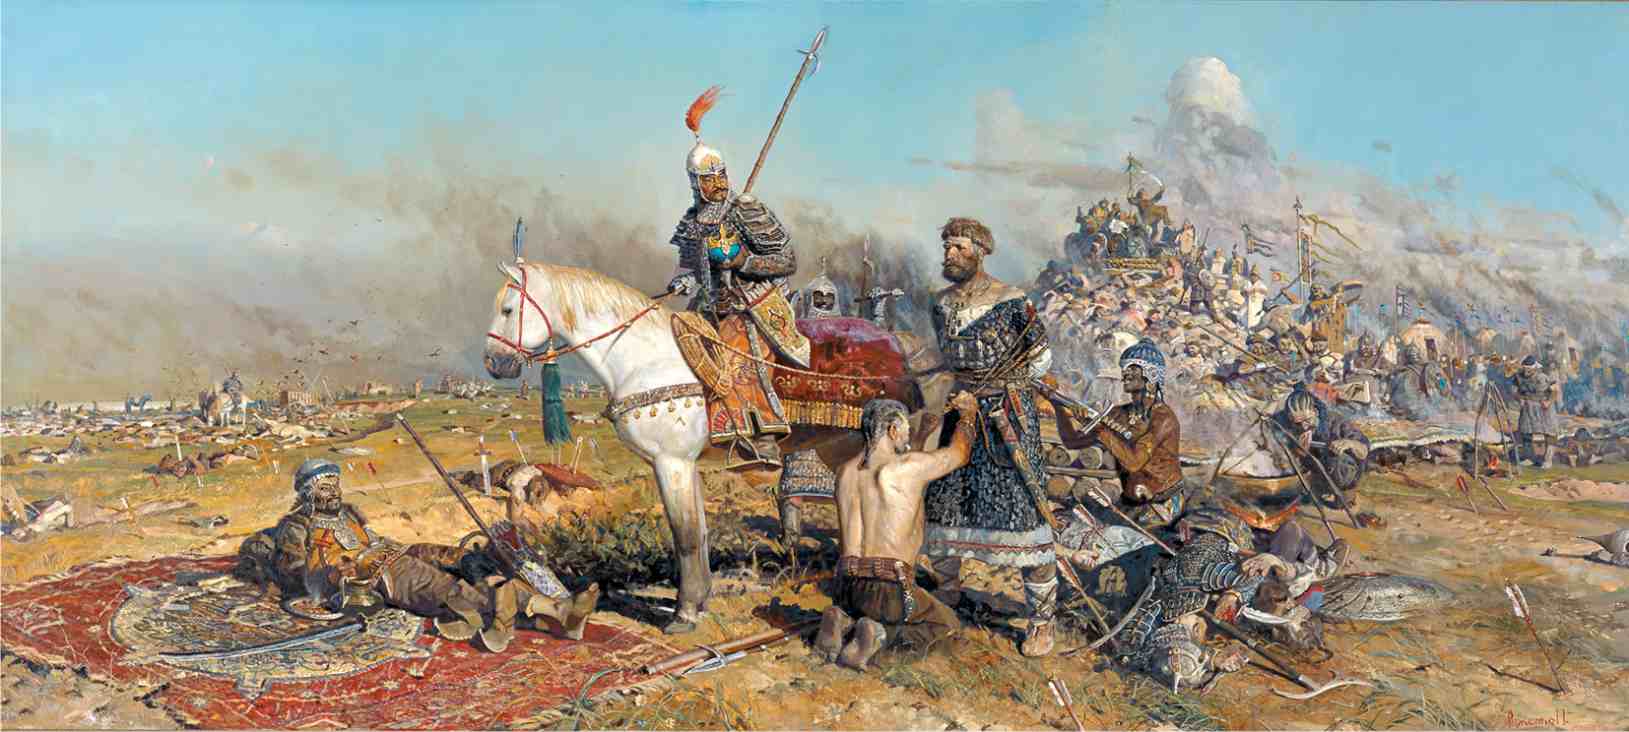 Как монголы разбили русских князей на Калке русских, монголы, воинов, князей, монголов, битвы, половцев, Калке, войск, русские, которые, только, через, начали, Мстислав, тысяч, летописи, разбили, напали, после